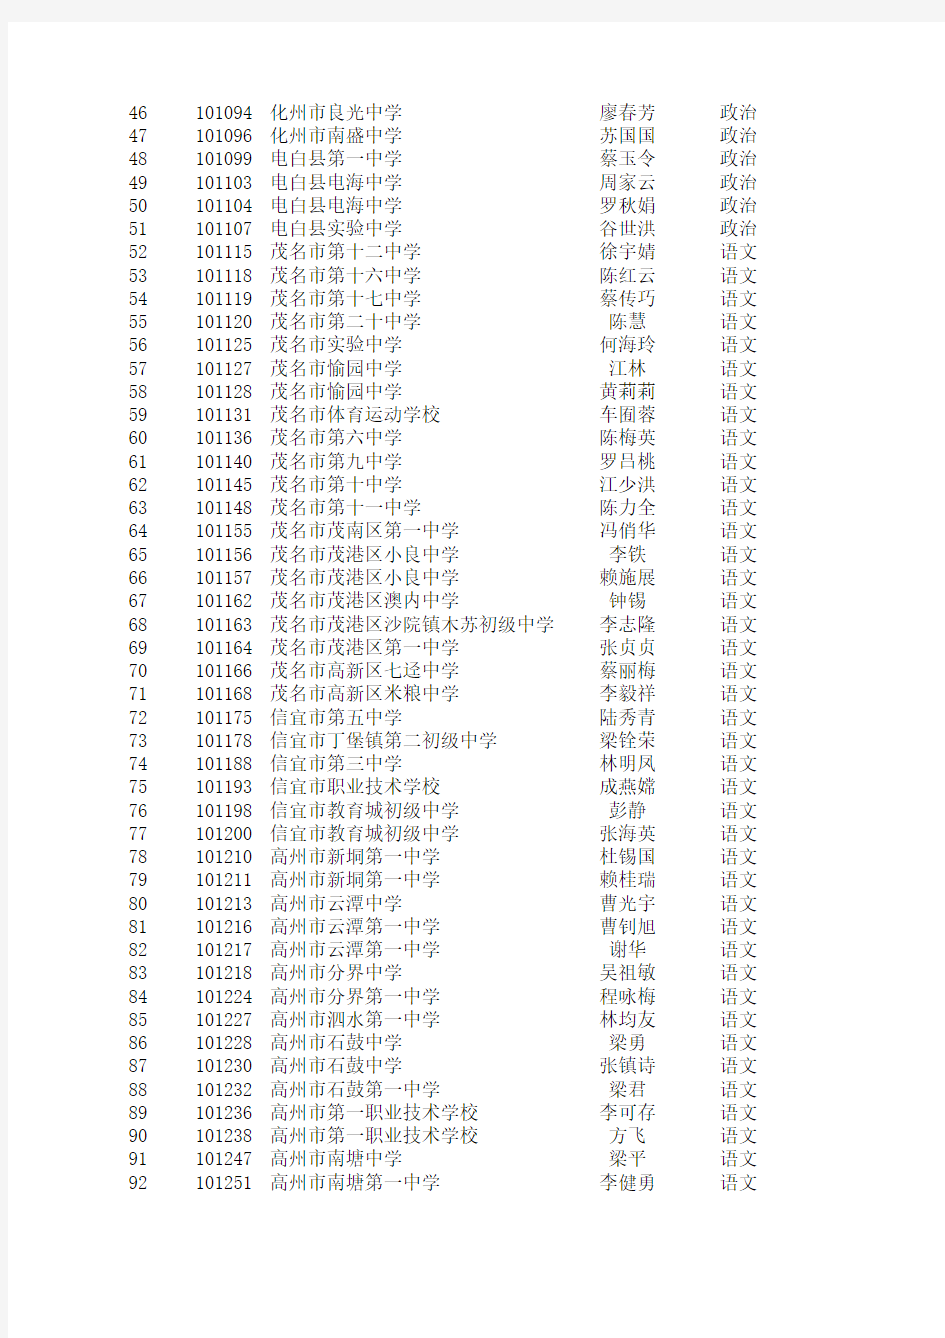 2012年广东省茂名市中学高级教师资格评审通过人员公示名单